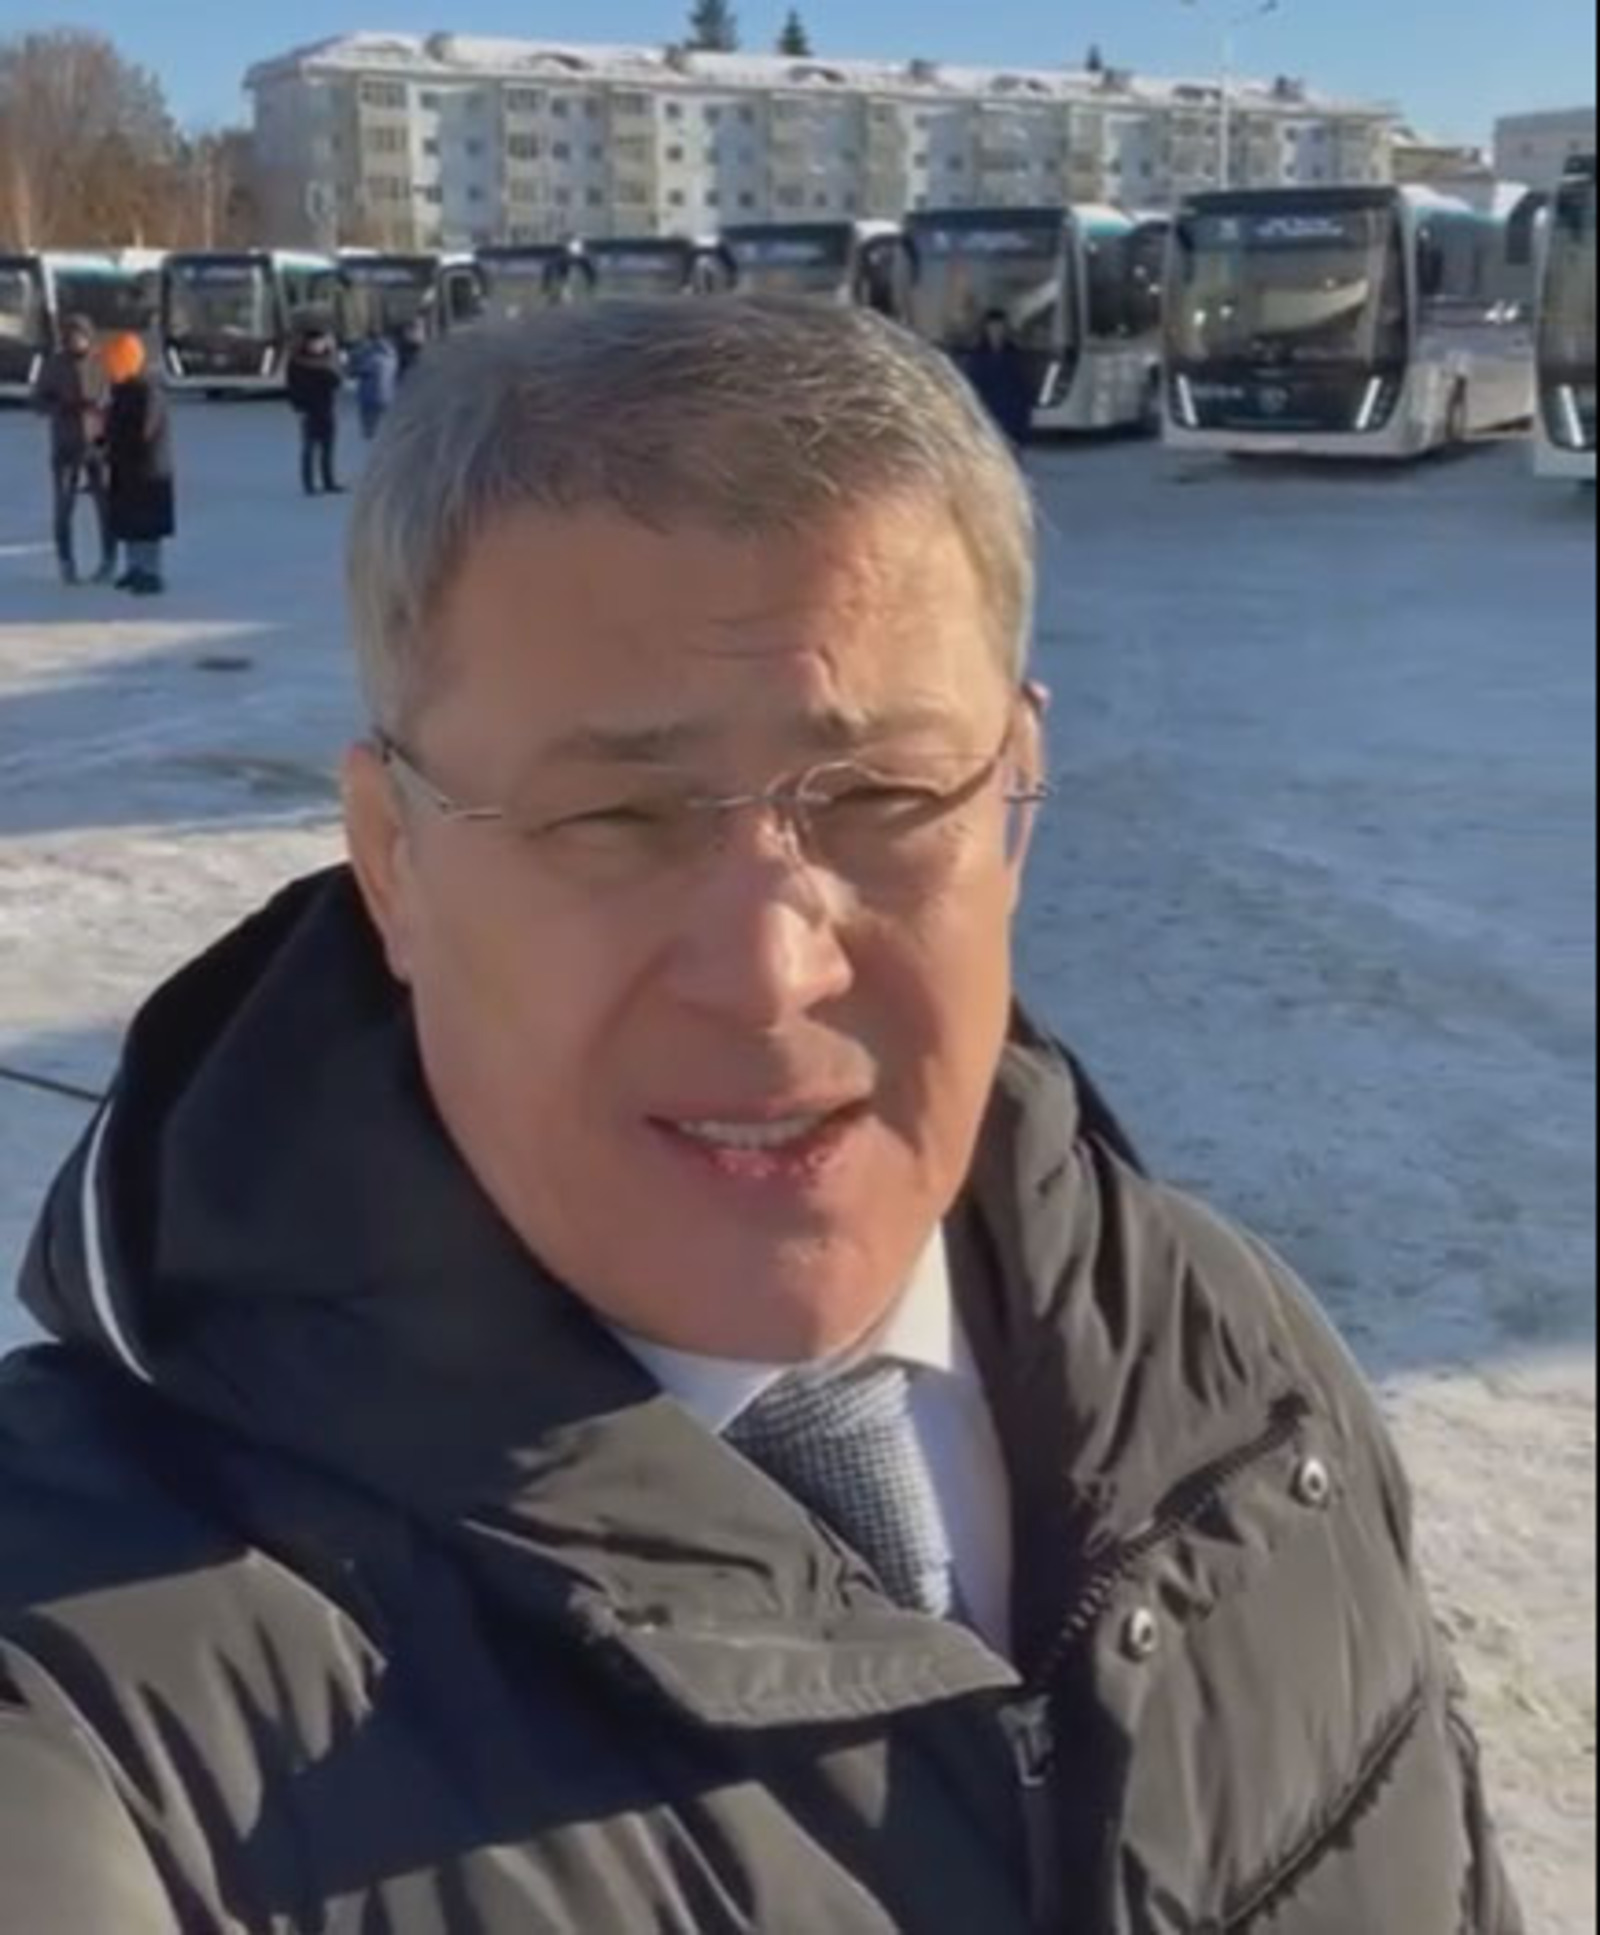 Радий Хабиров сообщил о запуске программы автобусного сообщения между селами и райцентрами Башкирии